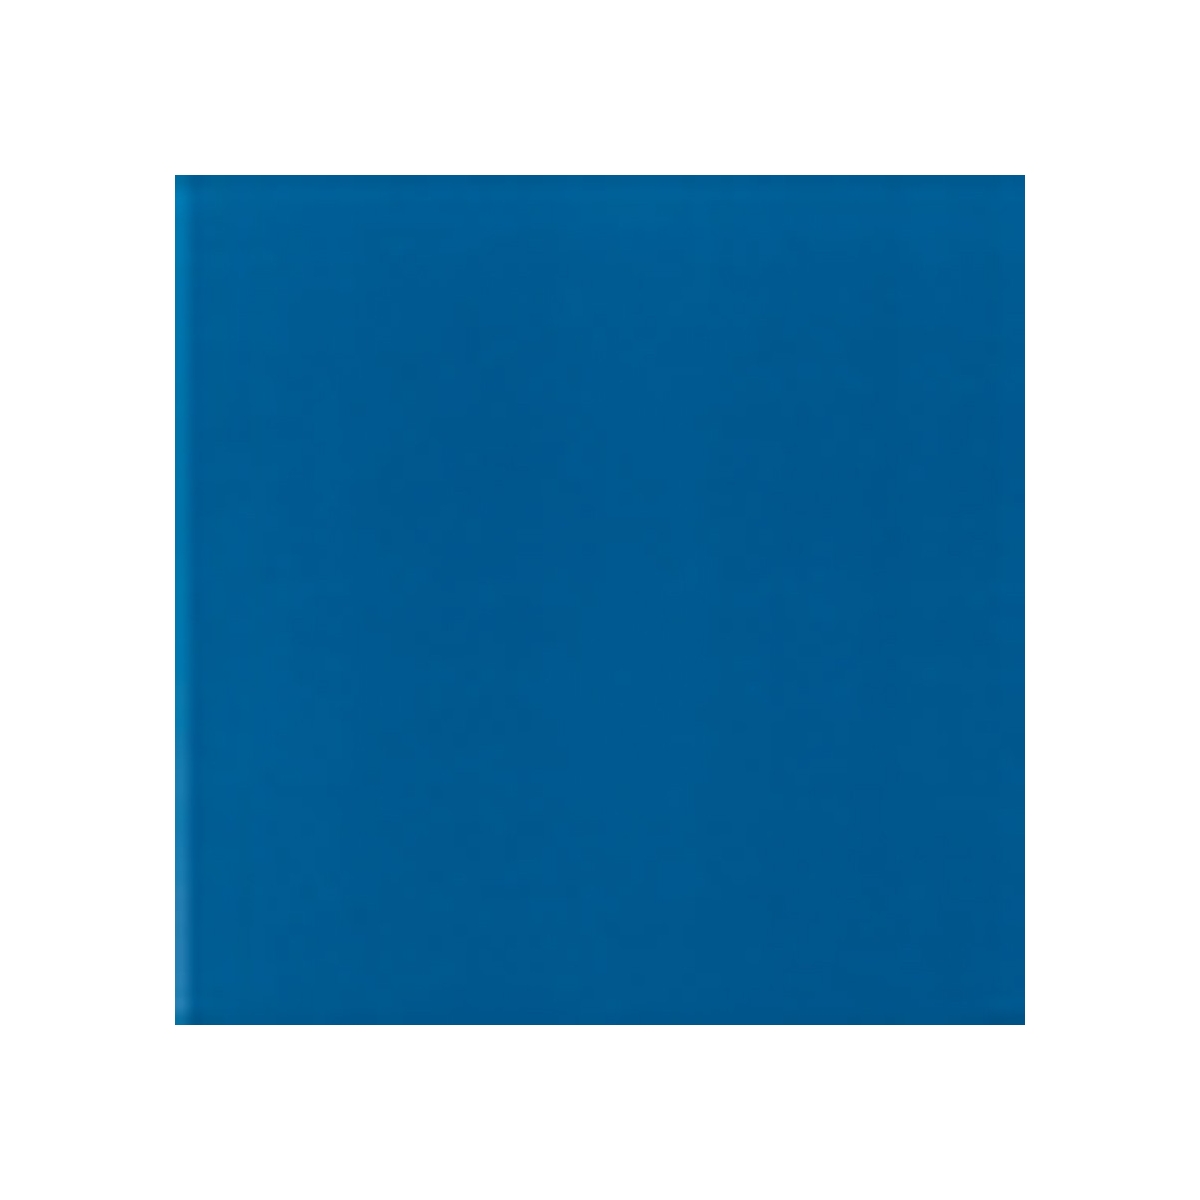 Cor azul escuro mate - Coleção Cores Mate - Marca Mainzu